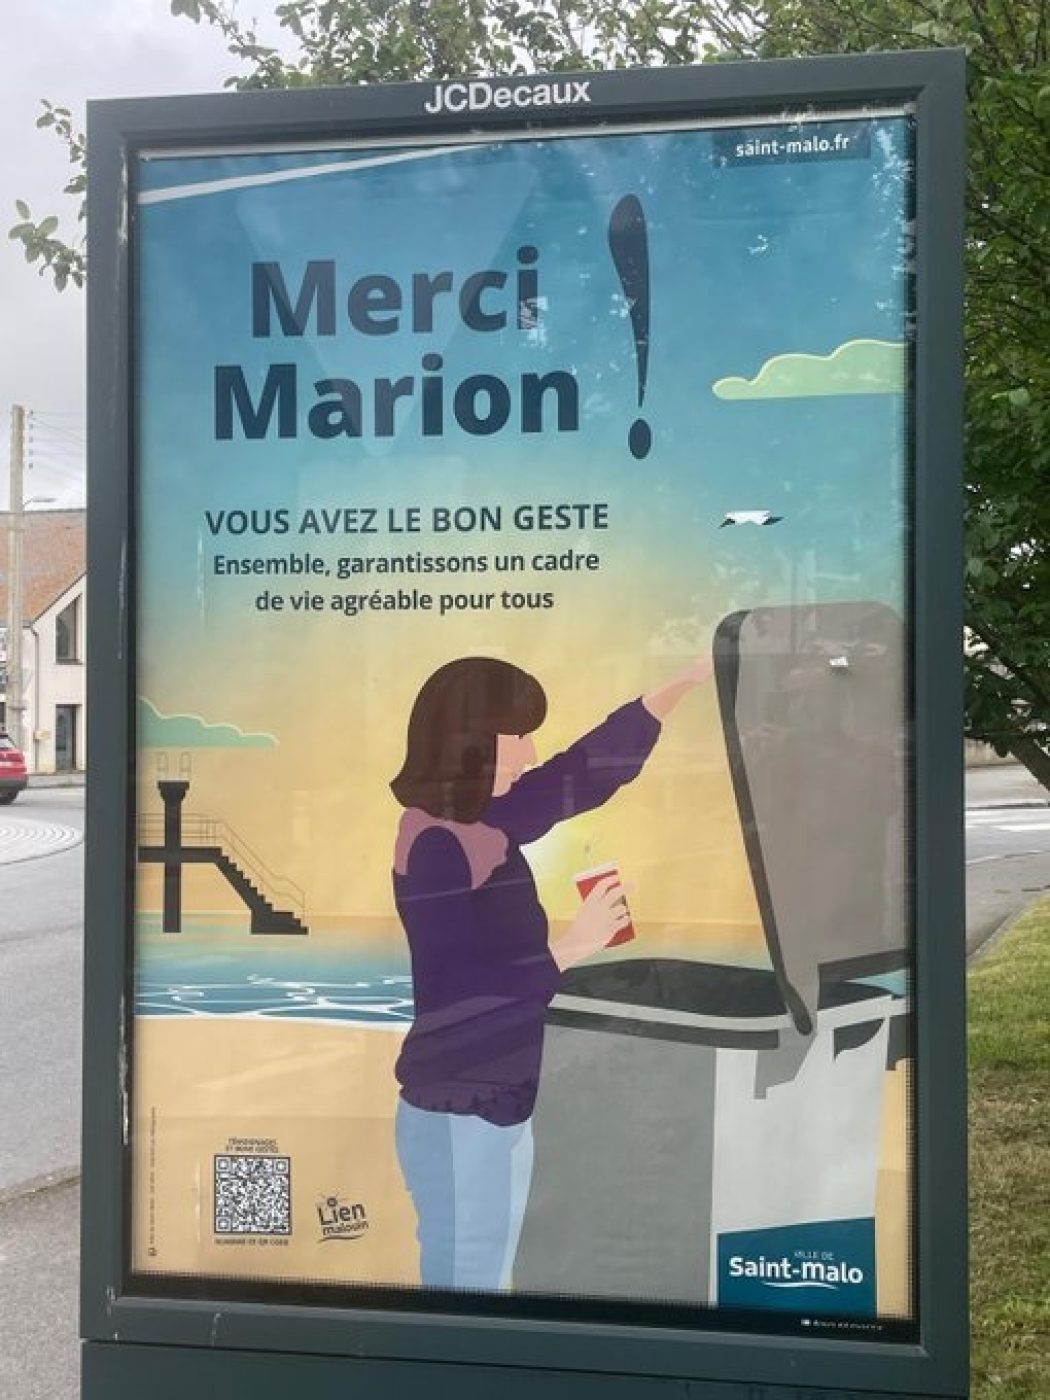 La drôle de publicité de la ville de Saint-Malo